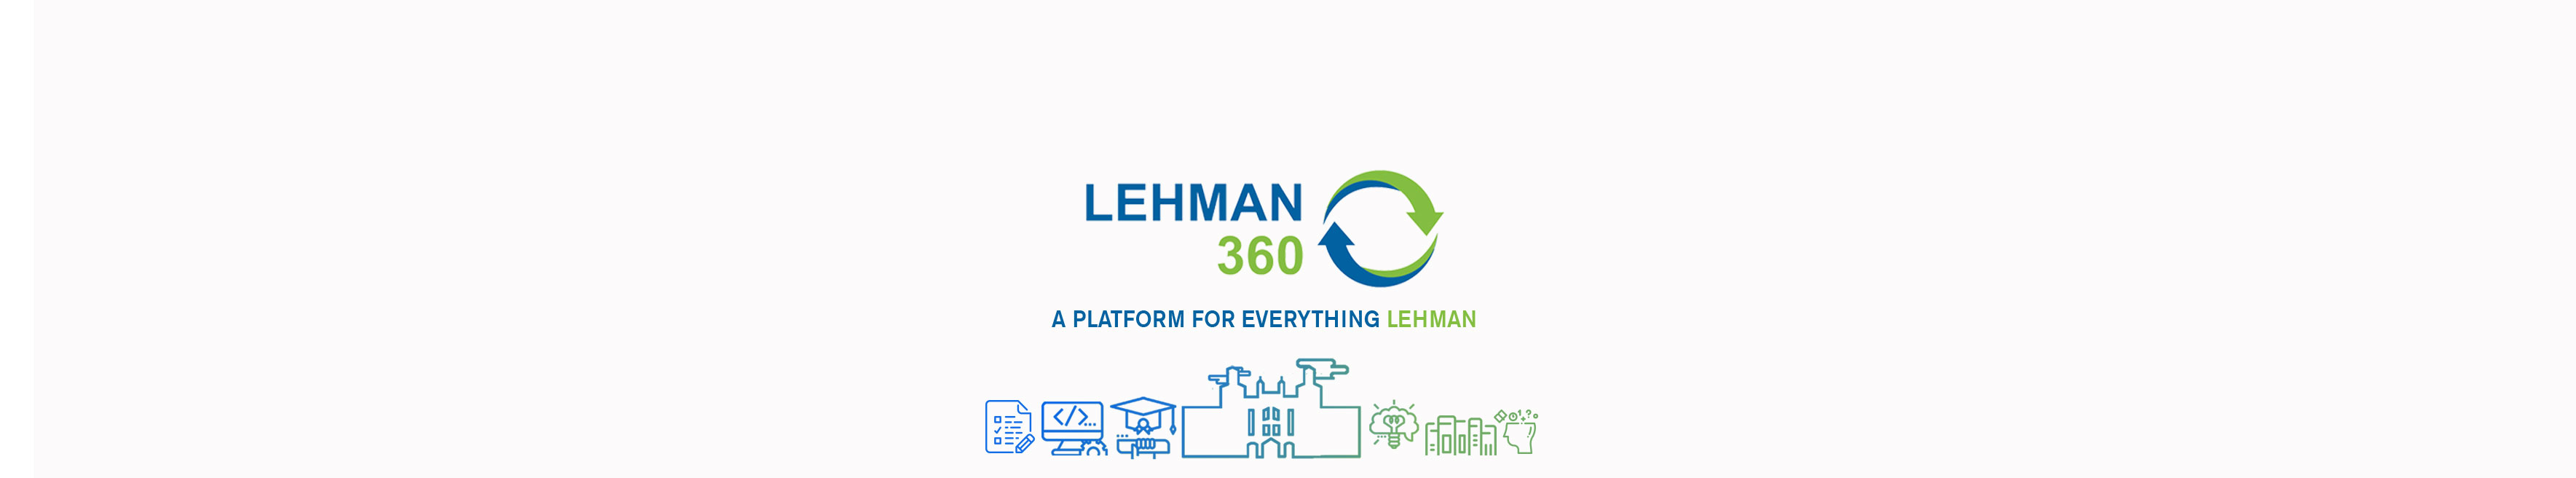 Lehman 360: A New Platform